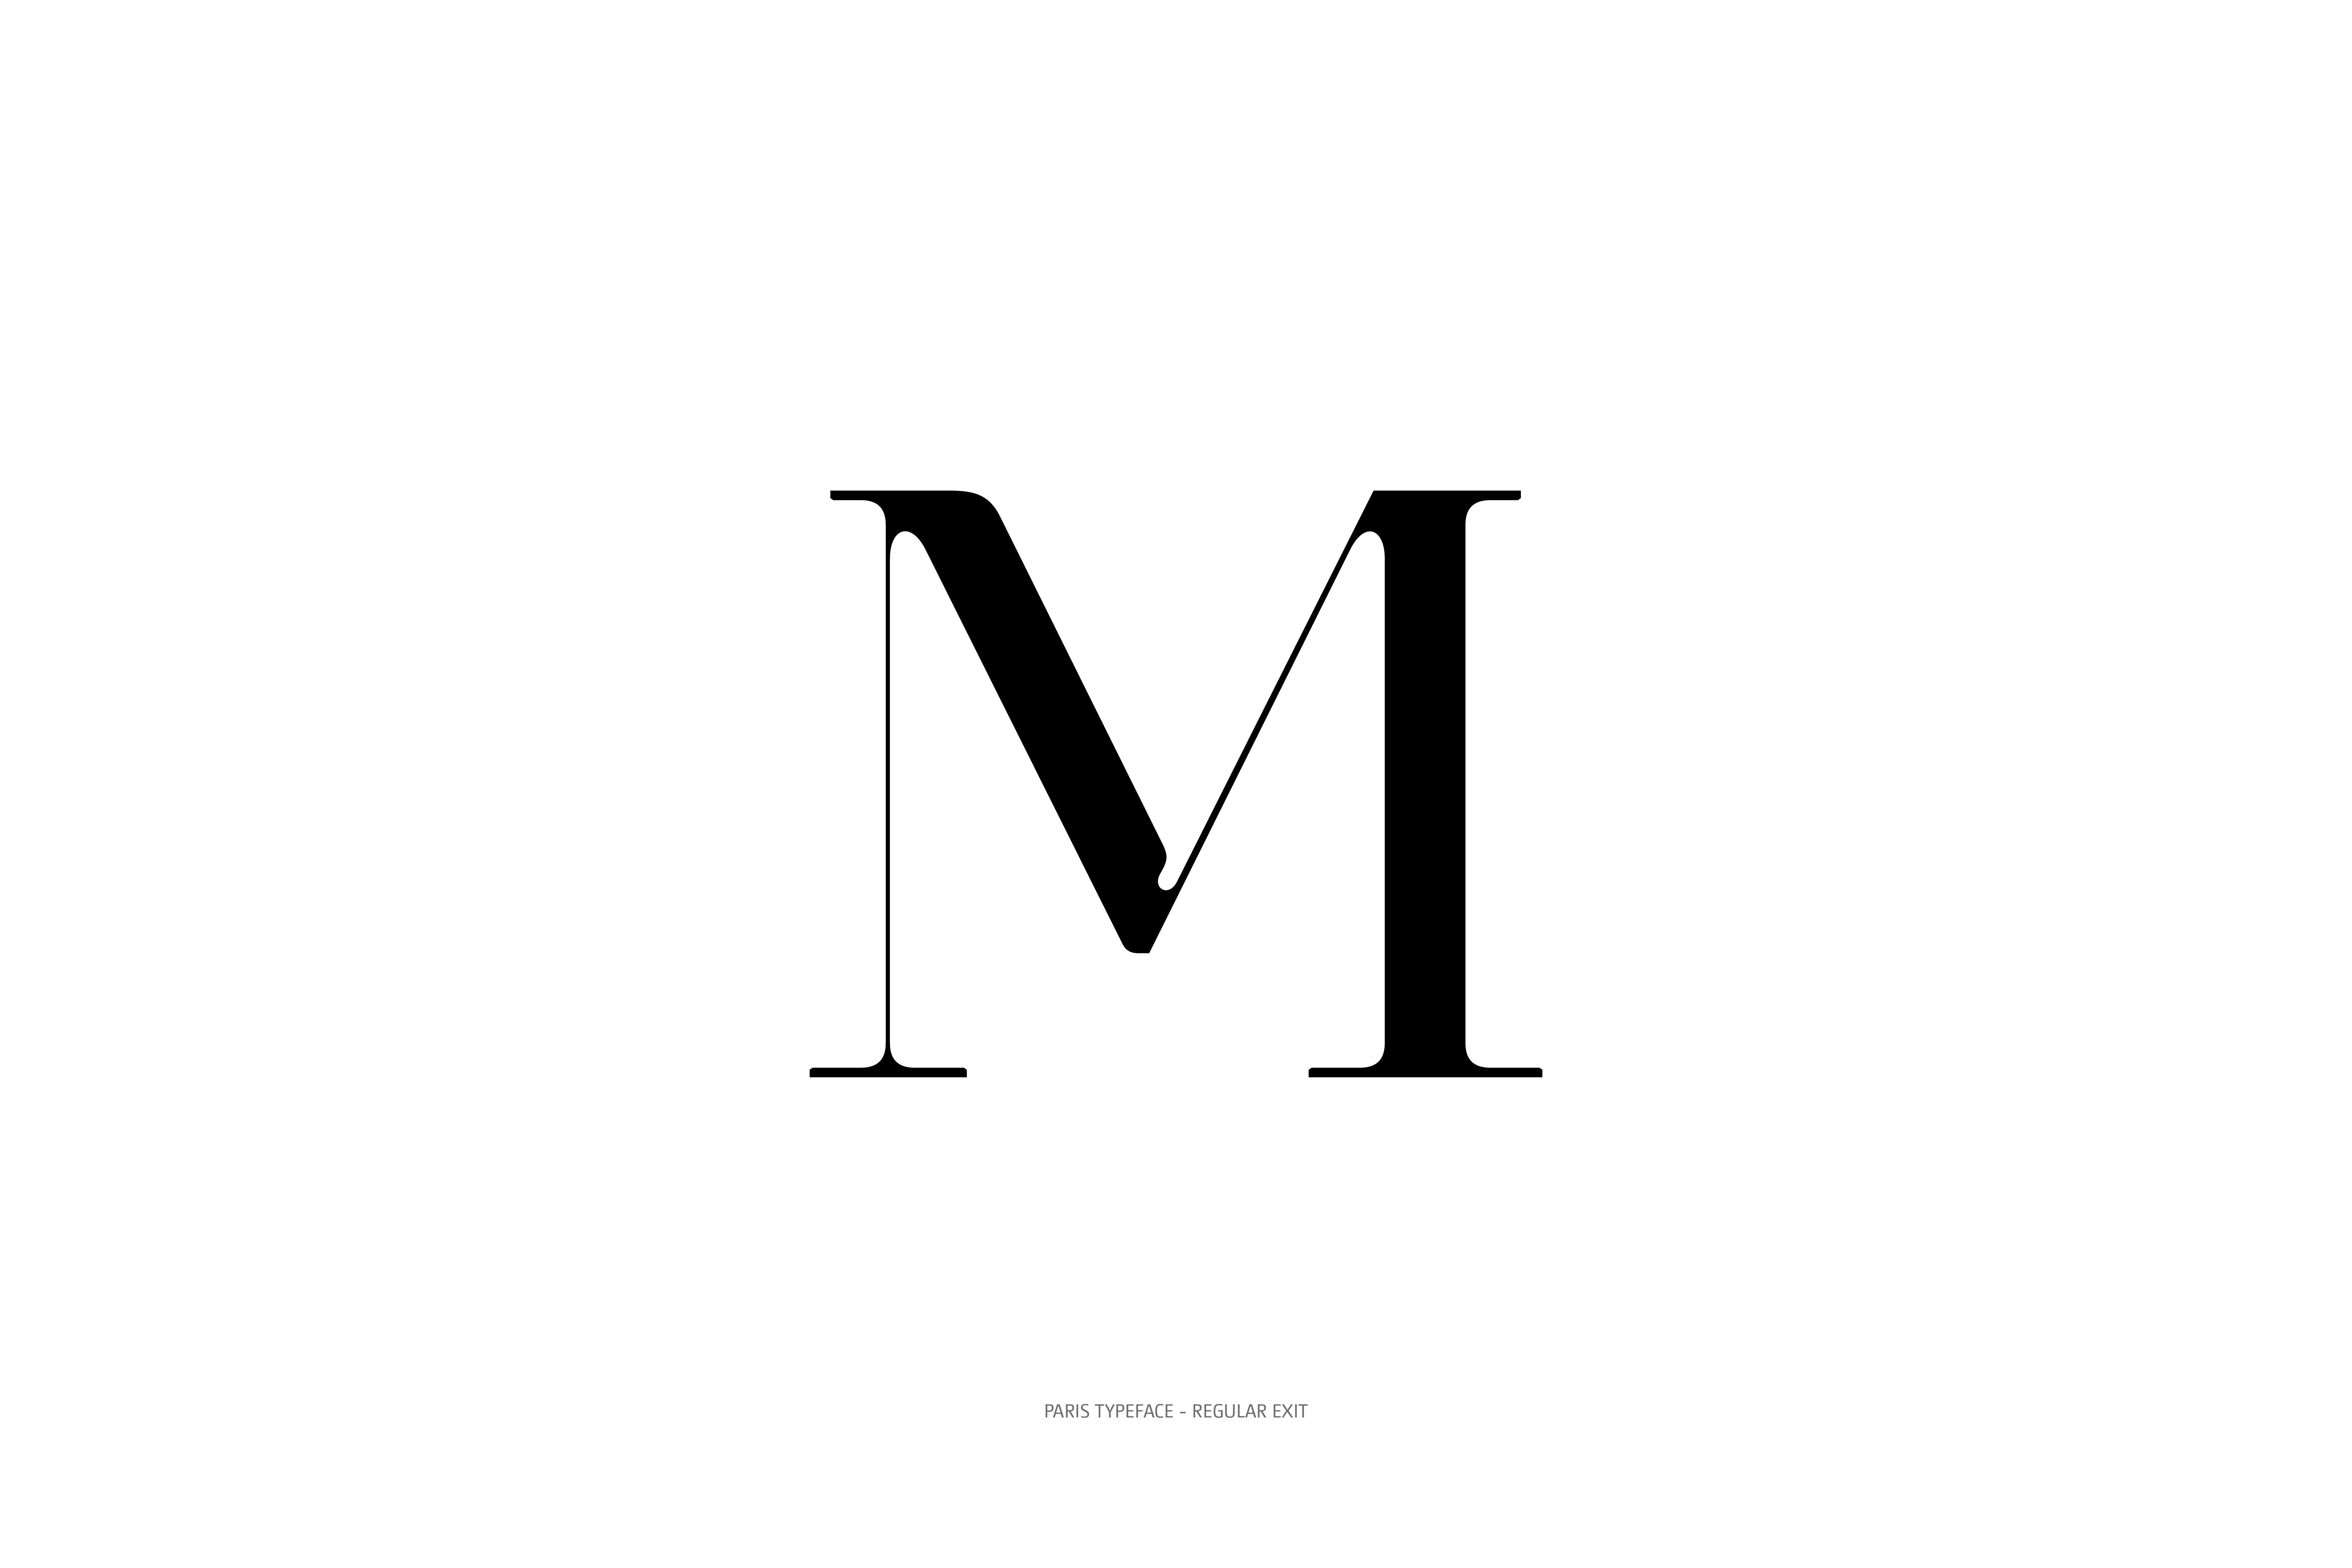 Paris Typeface Regular Exit M